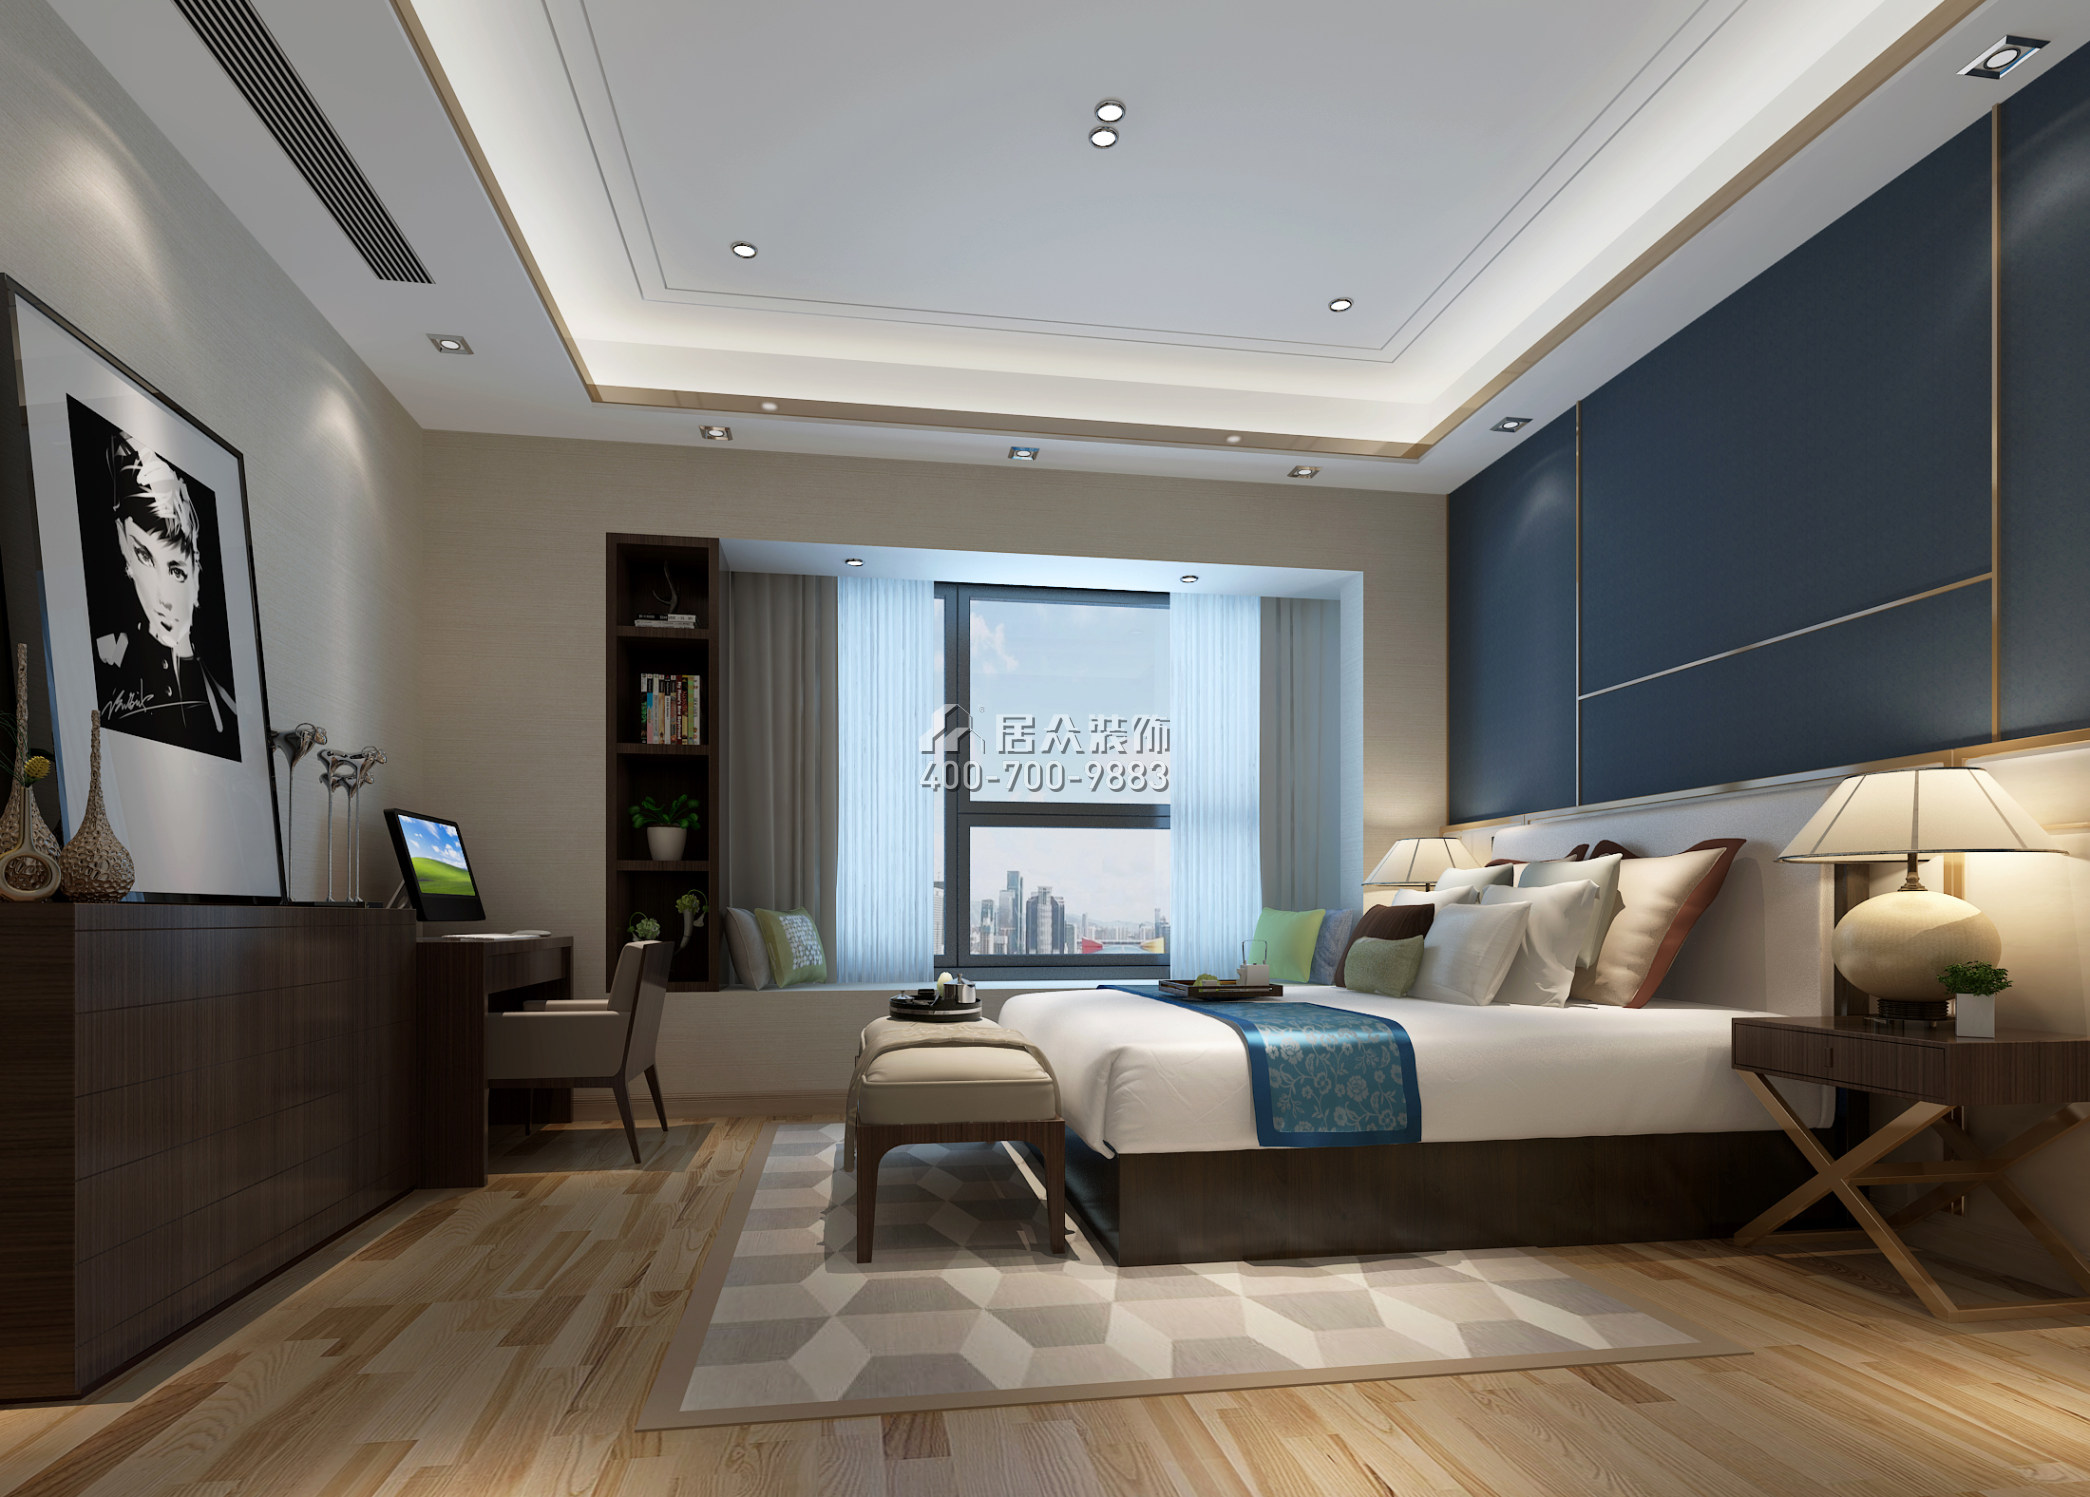 华侨城天鹅湖270平方米中式风格平层户型卧室装修效果图